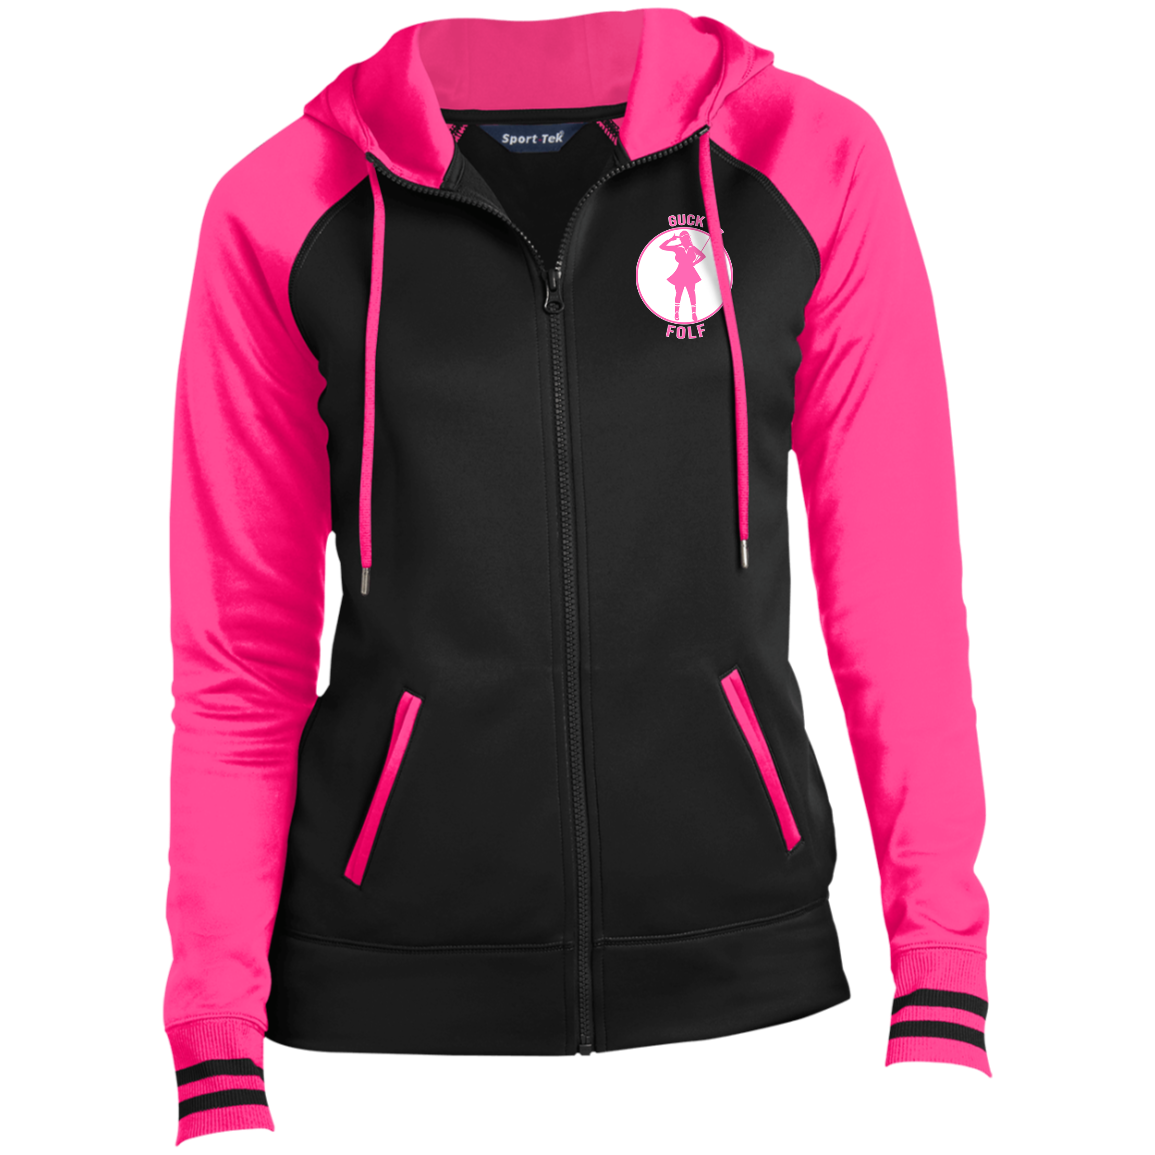 OPG Custom Design #19. GUCK FOLF. Female Edition. Ladies' Sport-Wick® Full-Zip Hooded Jacket